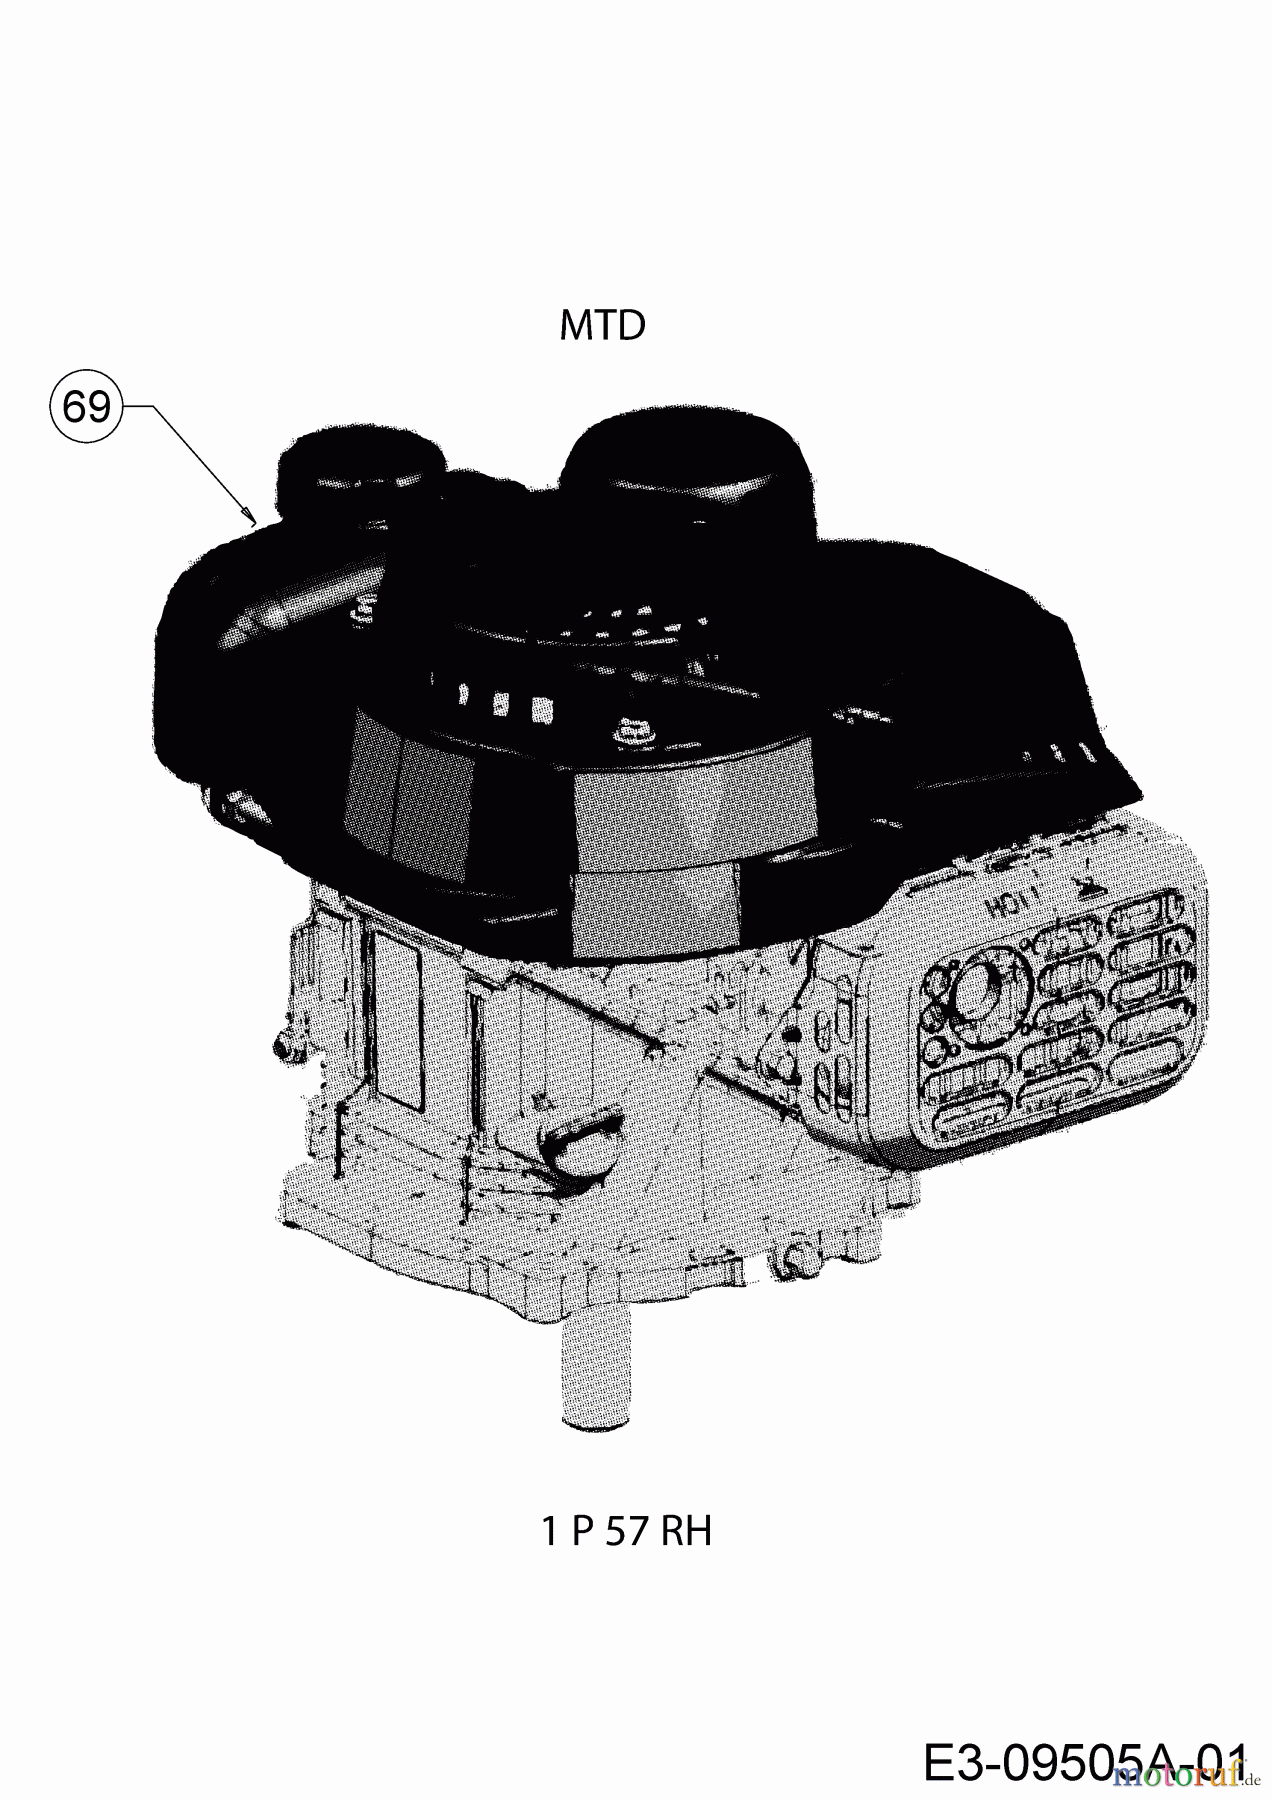  MTD Motormäher mit Antrieb Smart 42 SPO 12D-LASJ600  (2019) Motor MTD